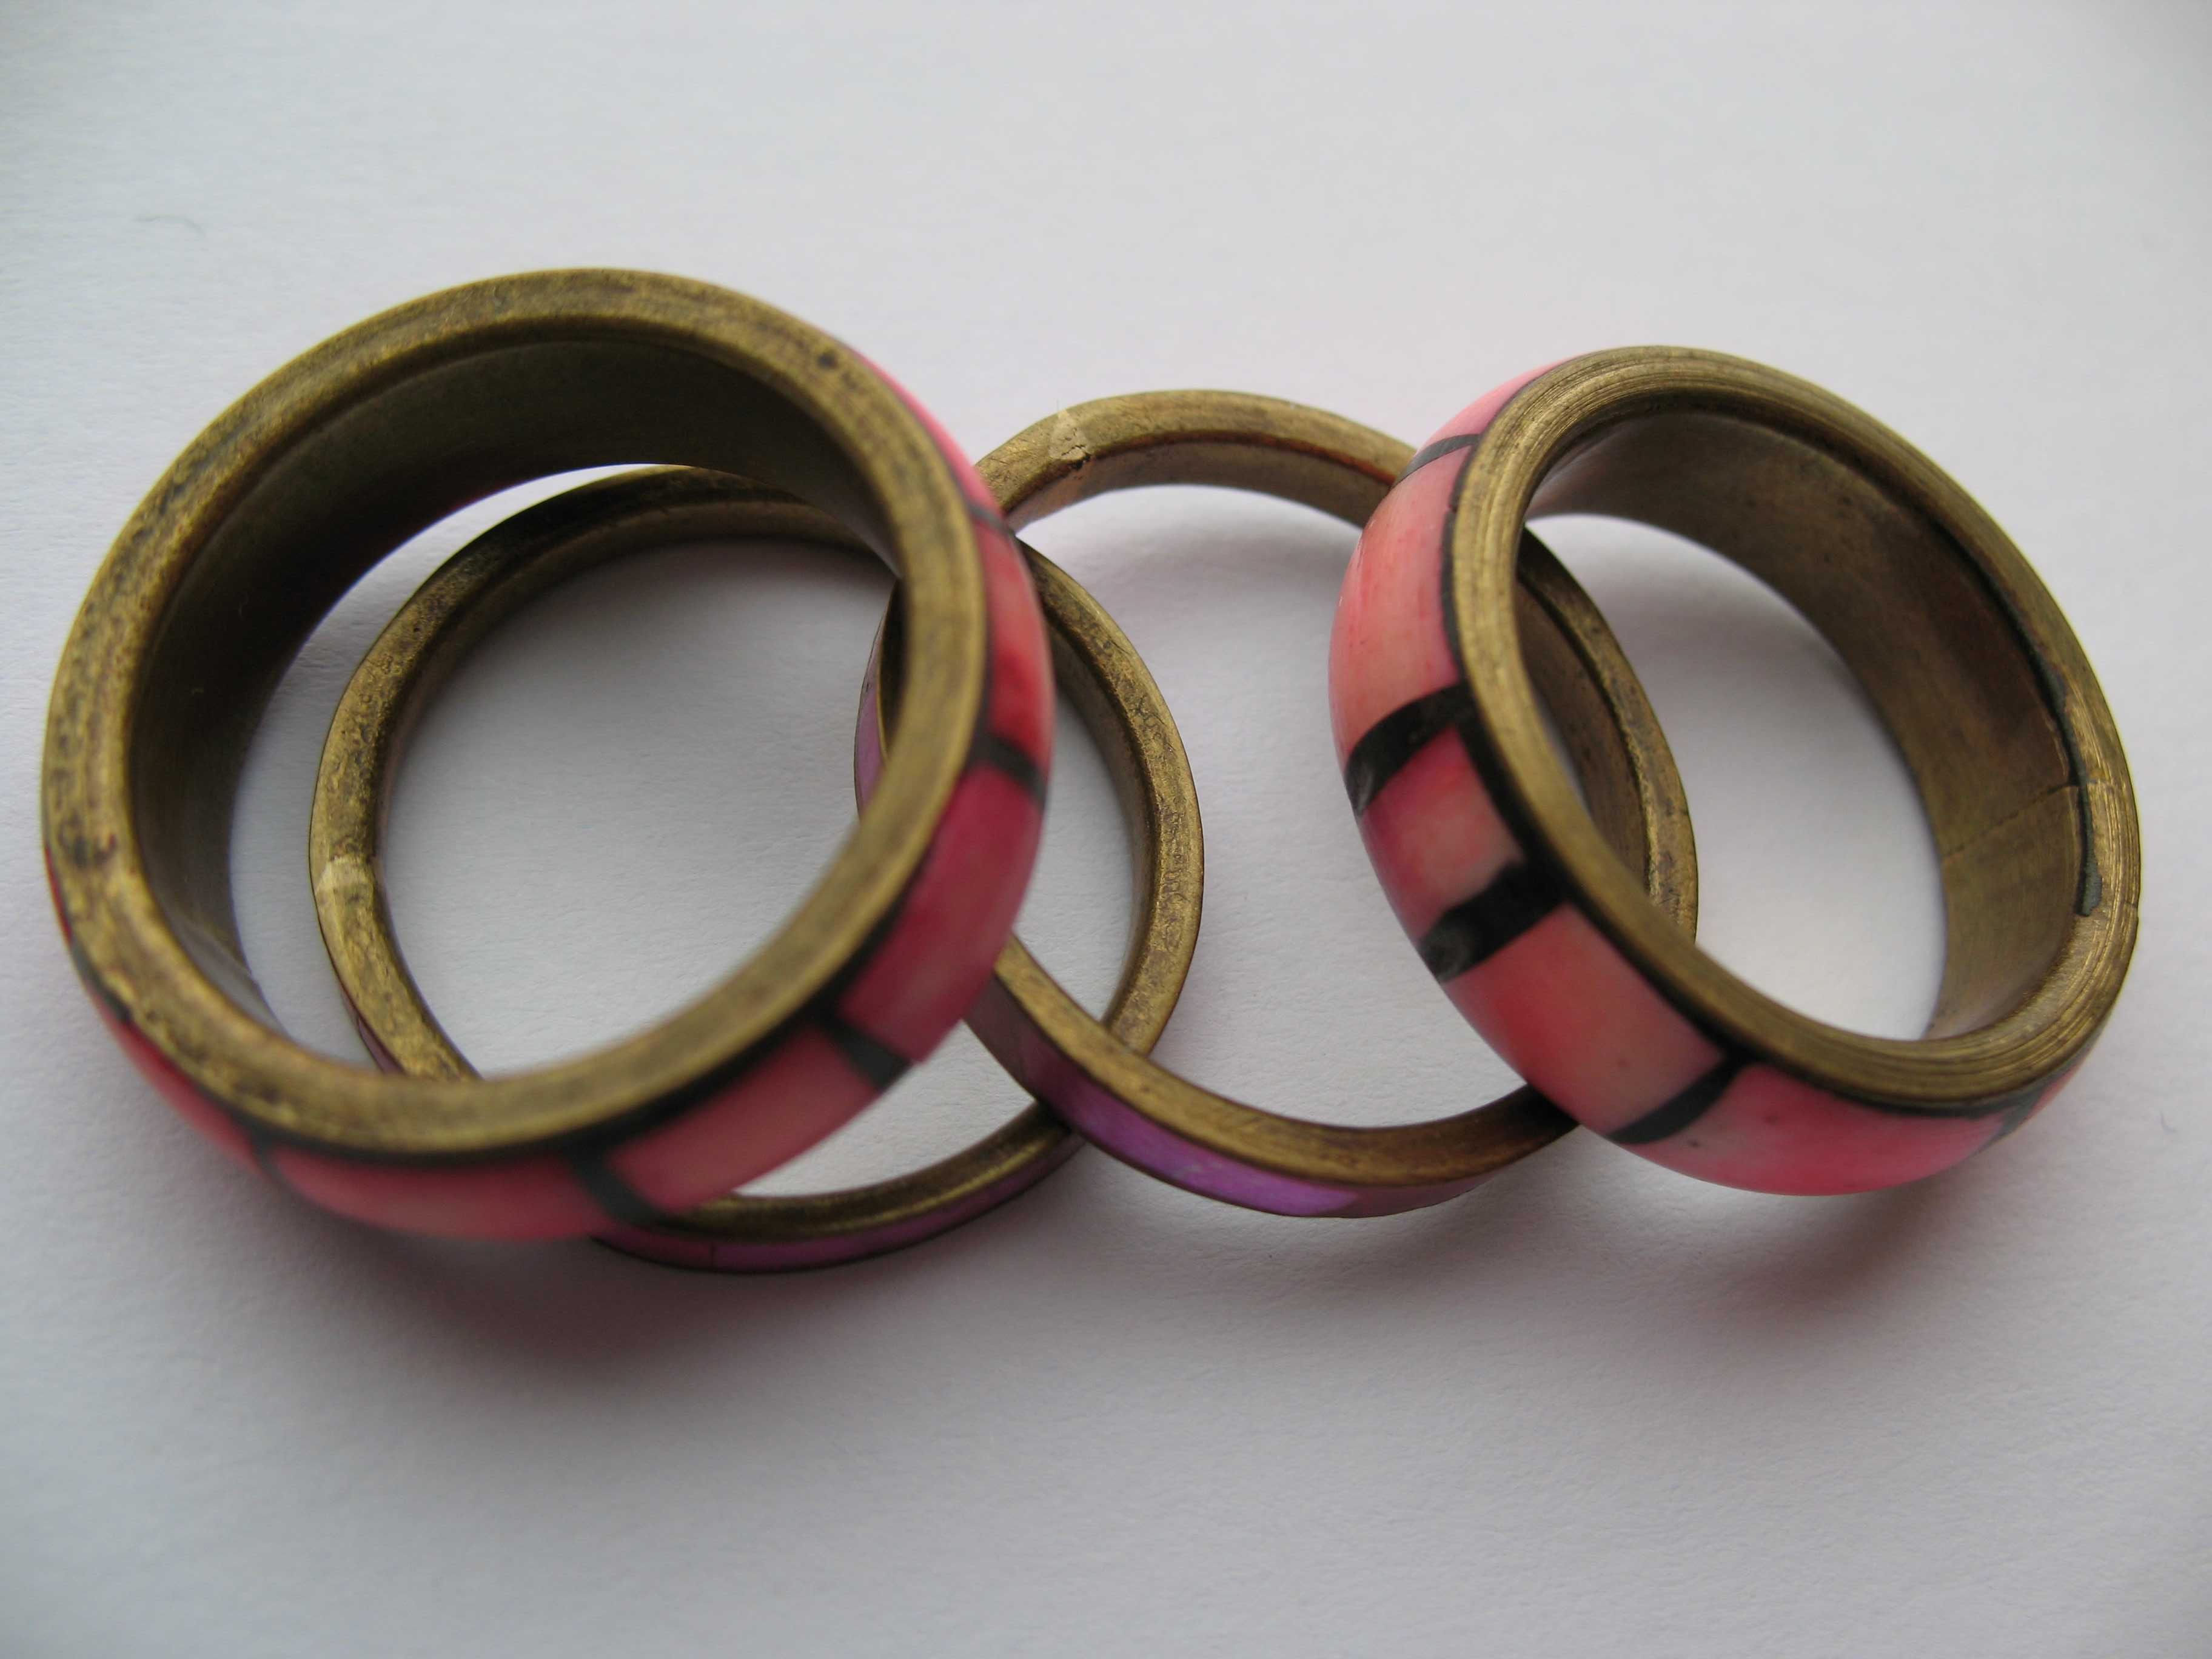 ПАКИСТАН комплект четыре кольца латунь и перламутр под цветным лаком